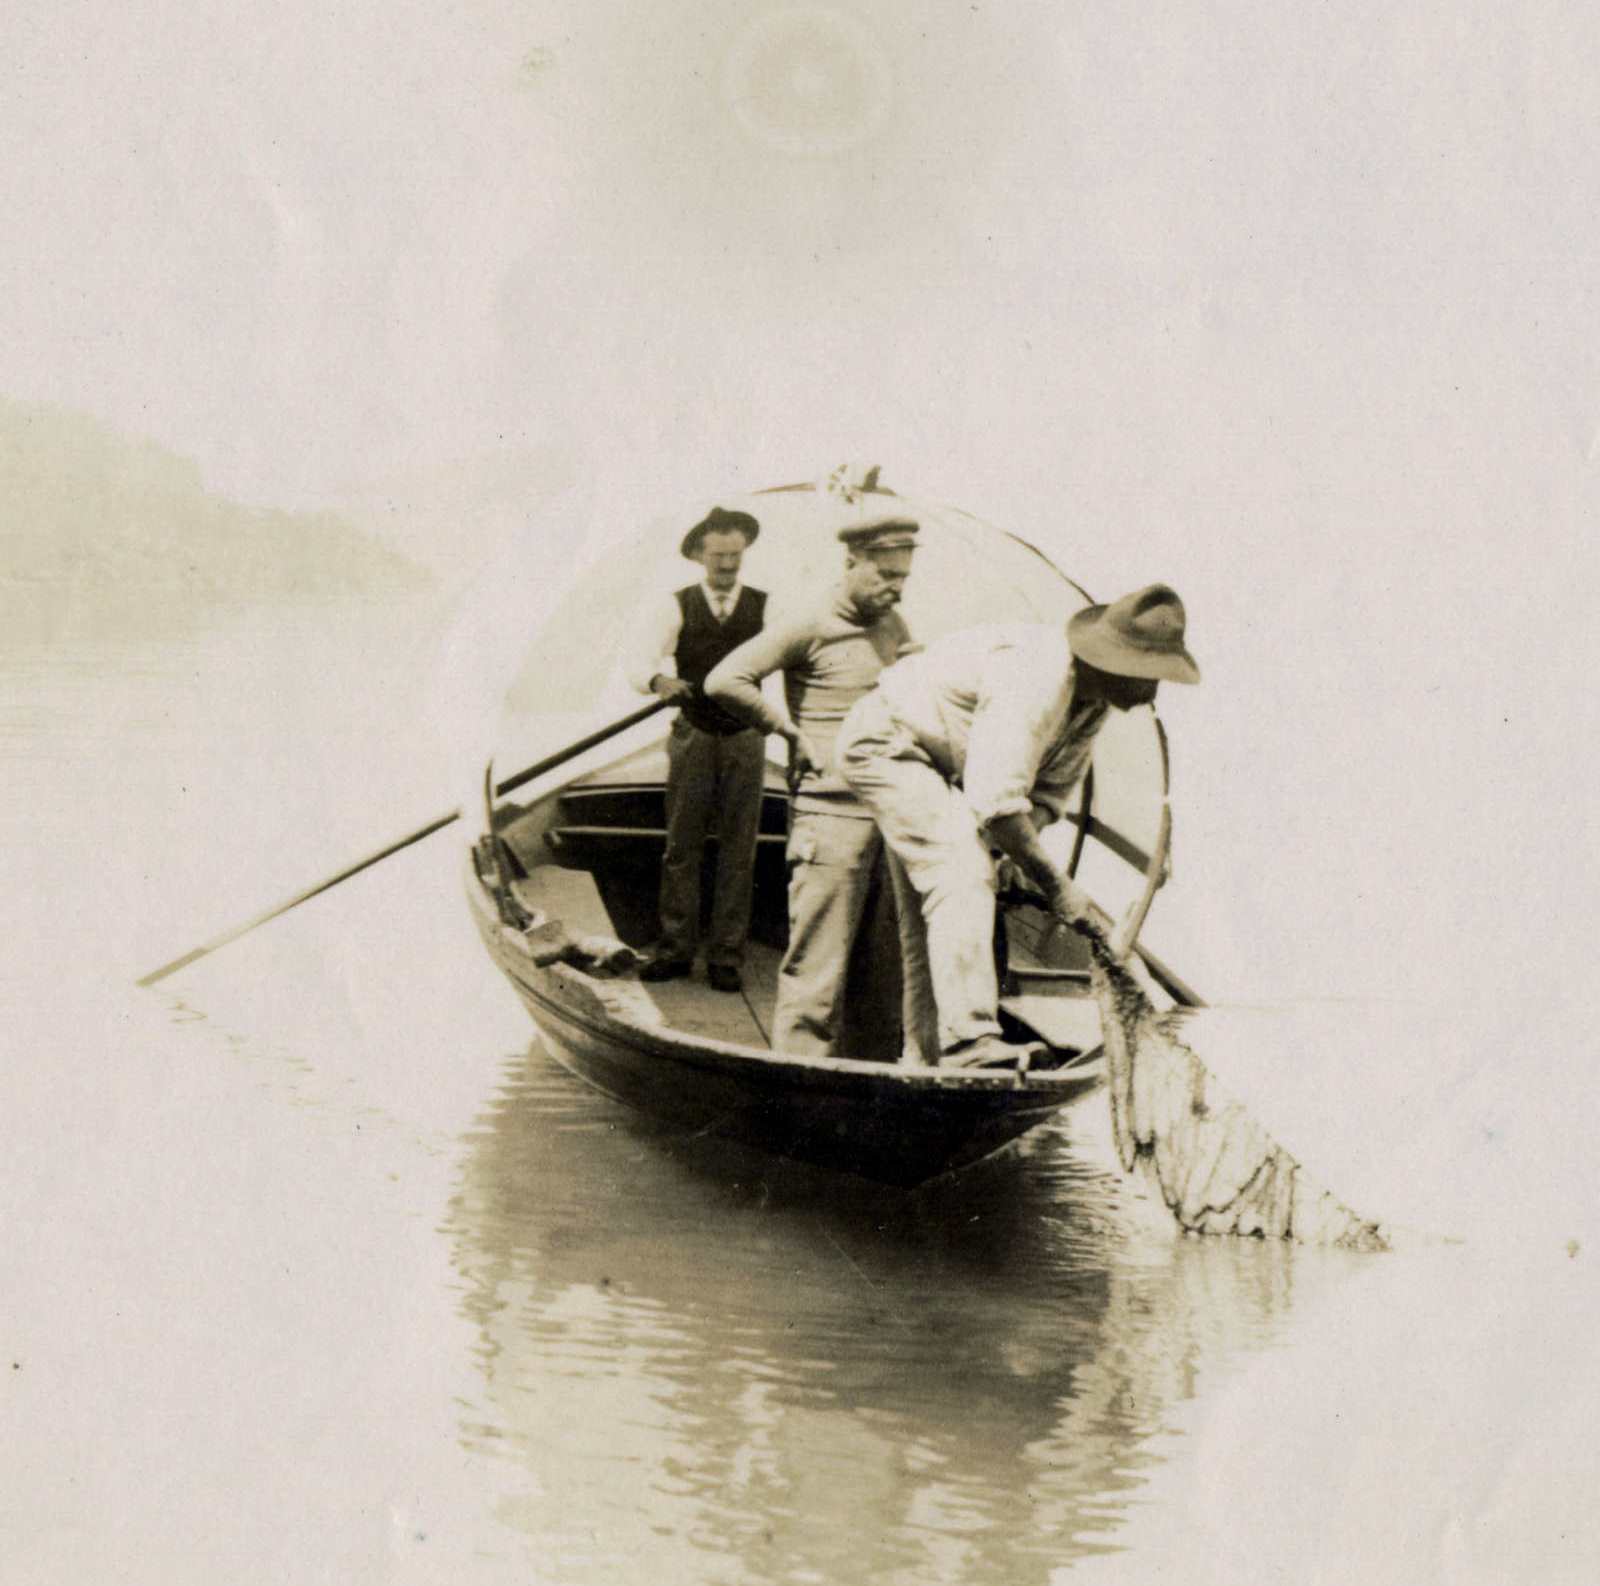 1 - Guido family fishing 1920s